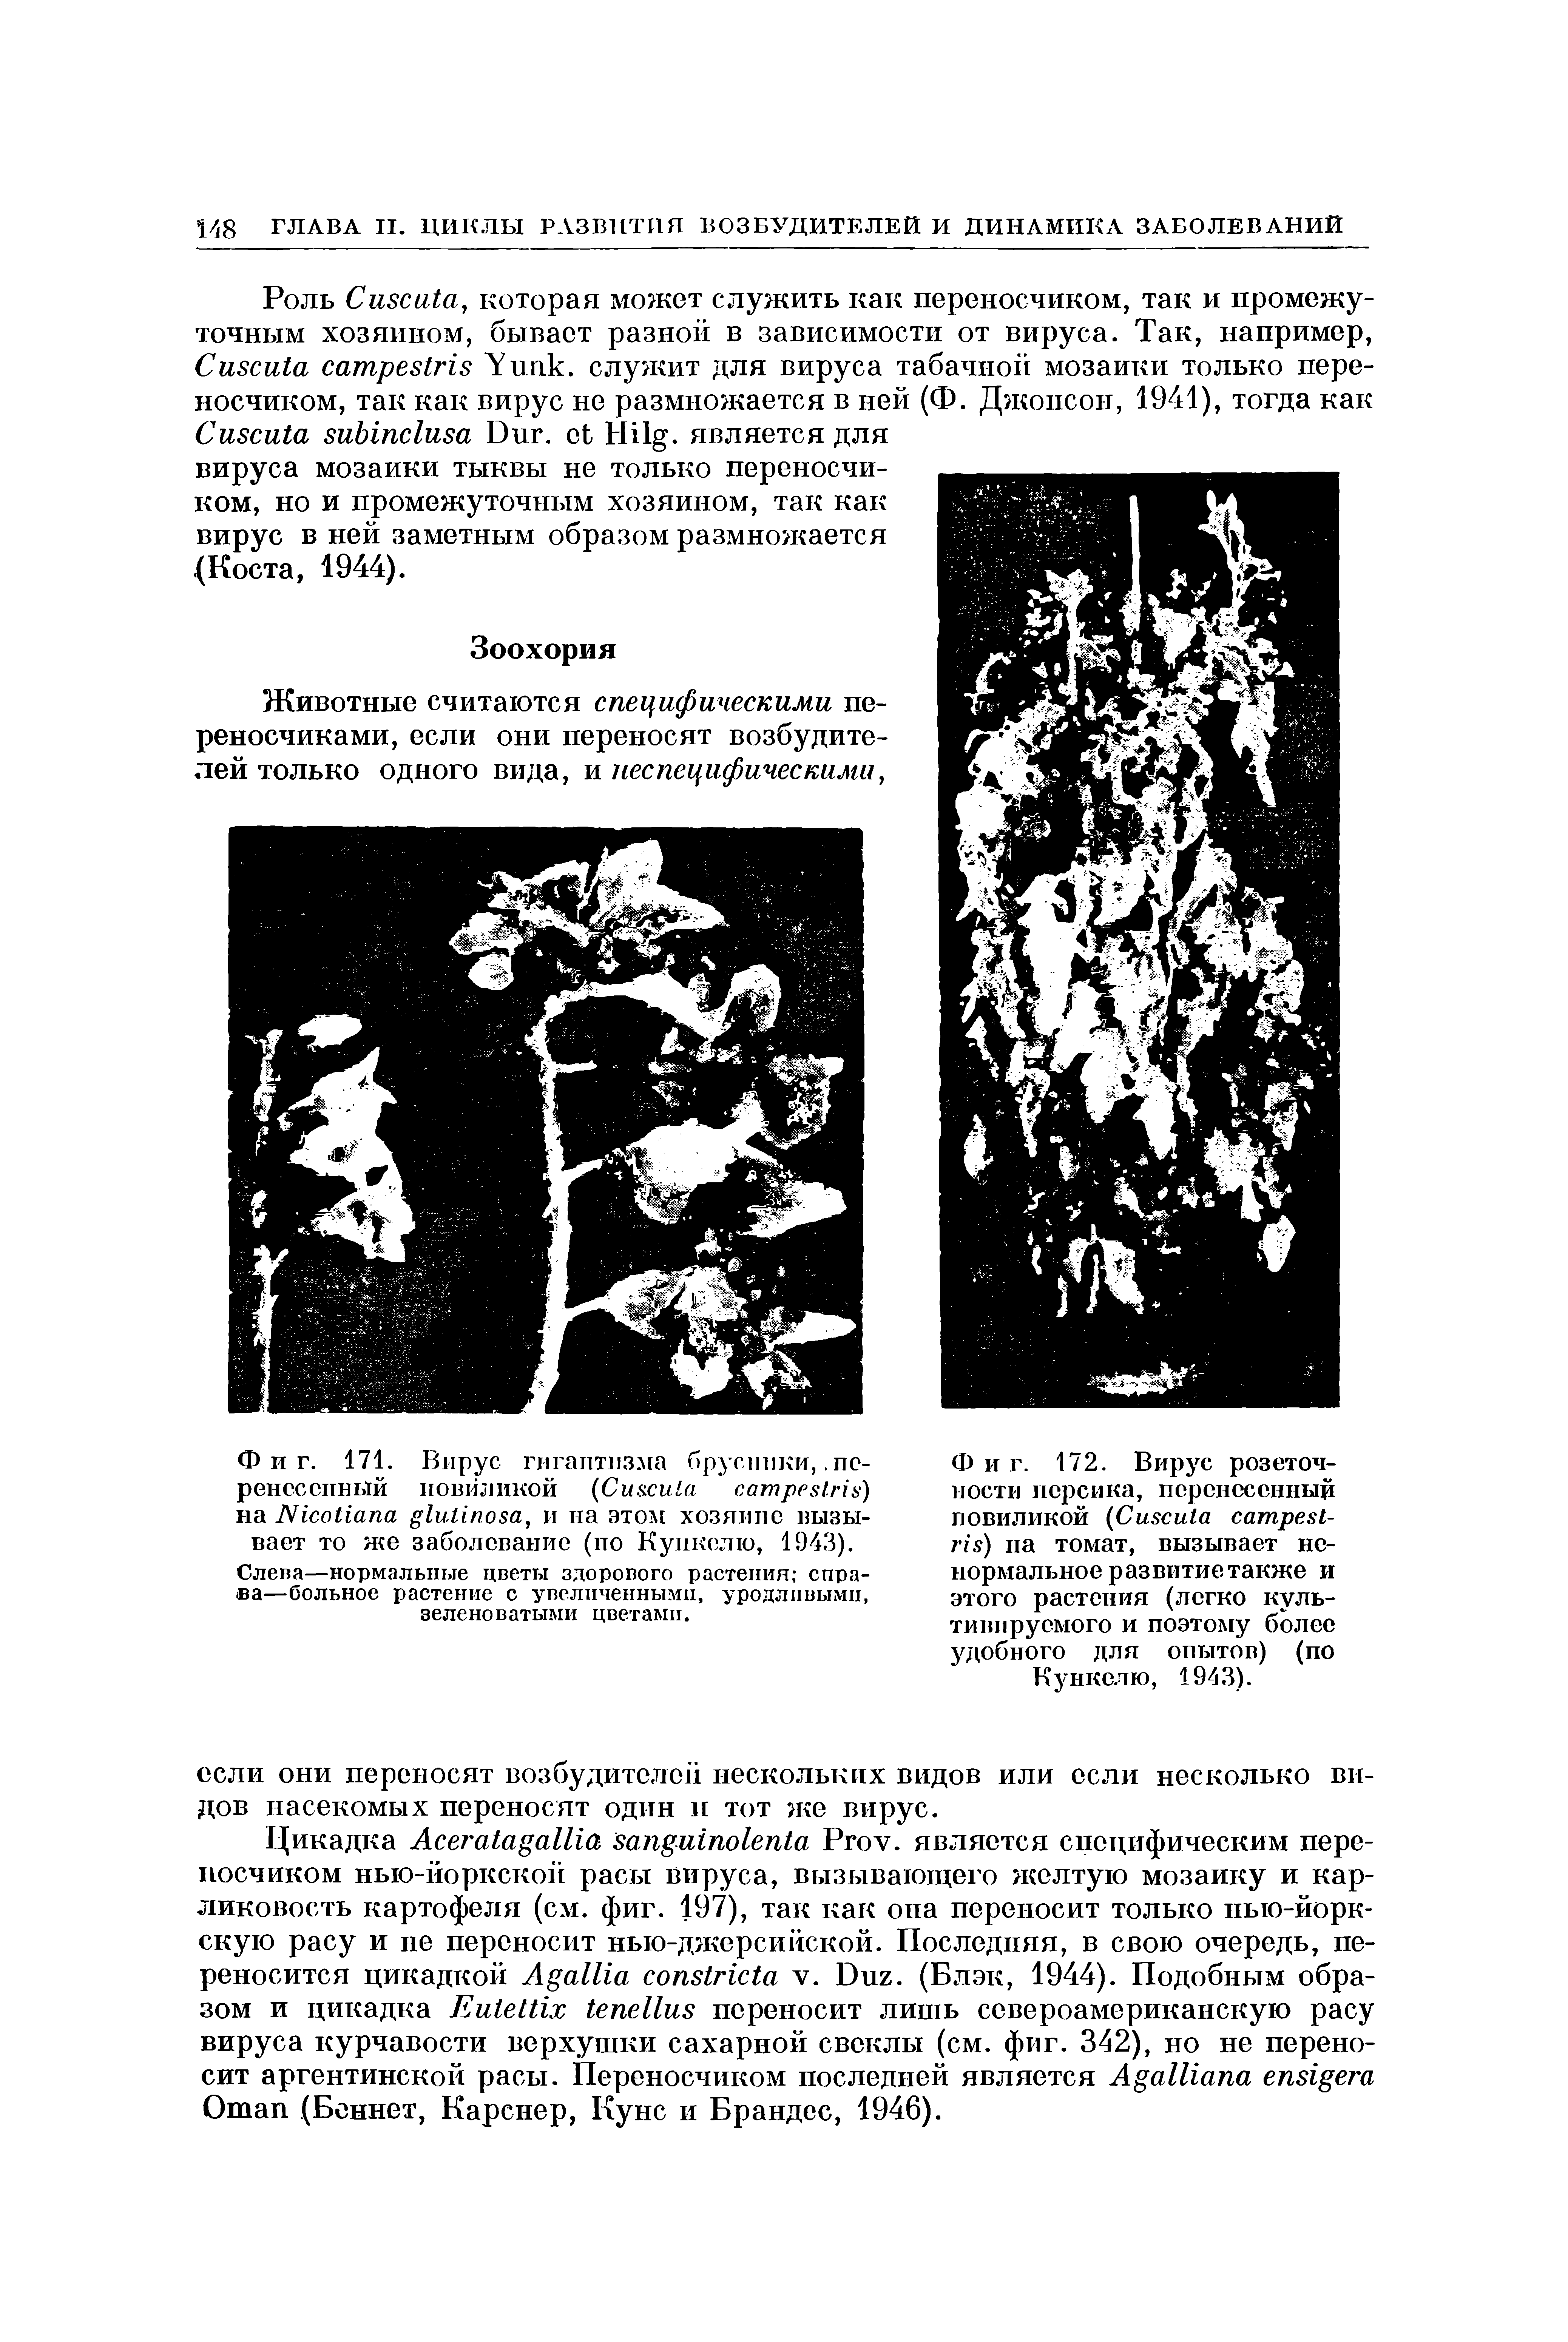 Фиг. 171. Вирус гигантизма брусники,. перенесенный повиликой (C ) на N , и на этом хозяине вызывает то же заболевание (по Кункелю, 1943).